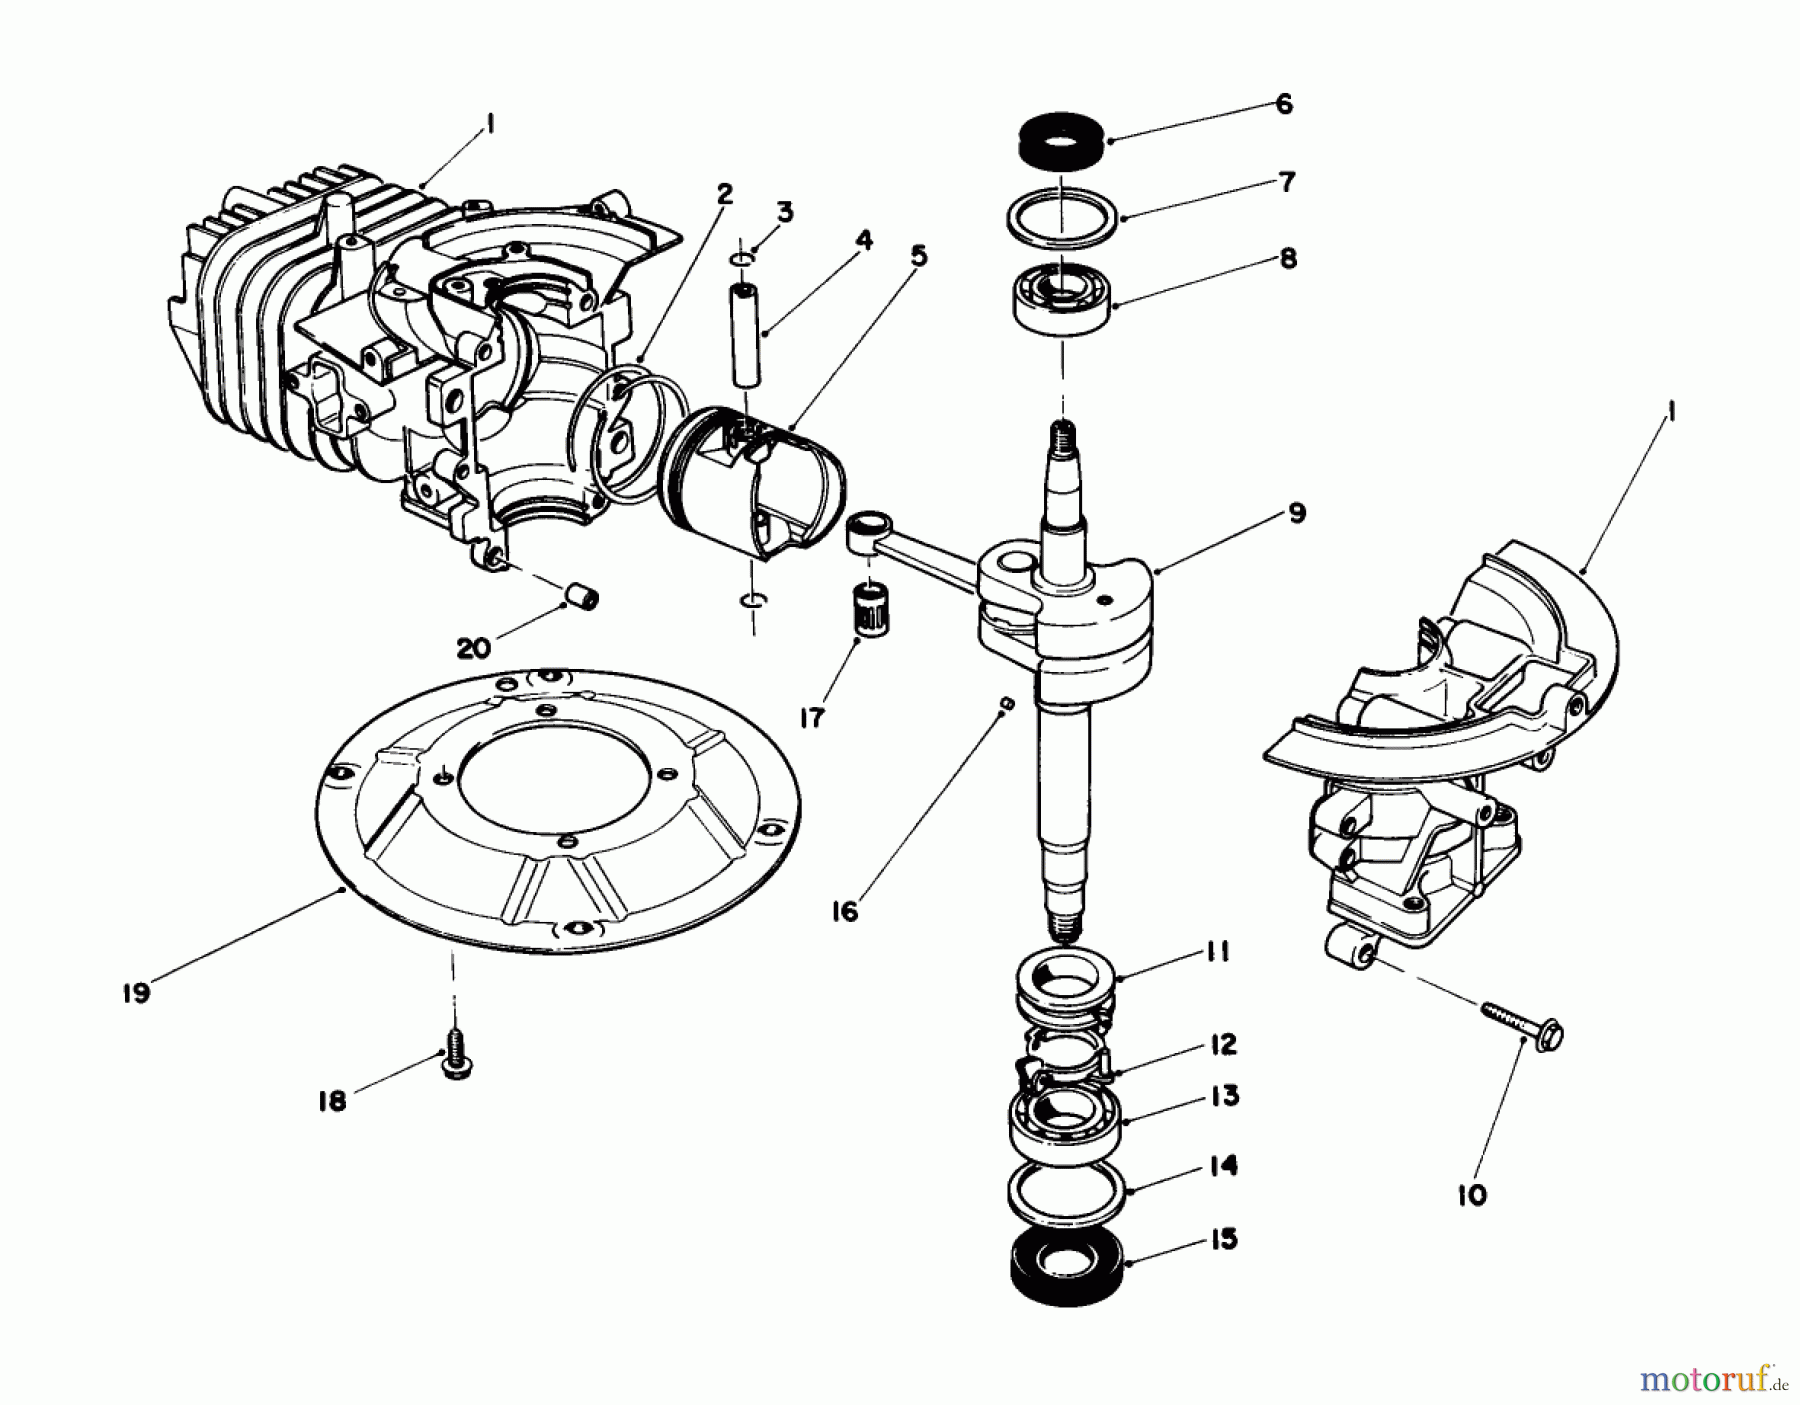  Toro Neu Mowers, Walk-Behind Seite 1 20581C - Toro Lawnmower, 1988 (8000001-8999999) ENGINE ASSEMBLY (ENGINE MODEL NO. 47PH7)